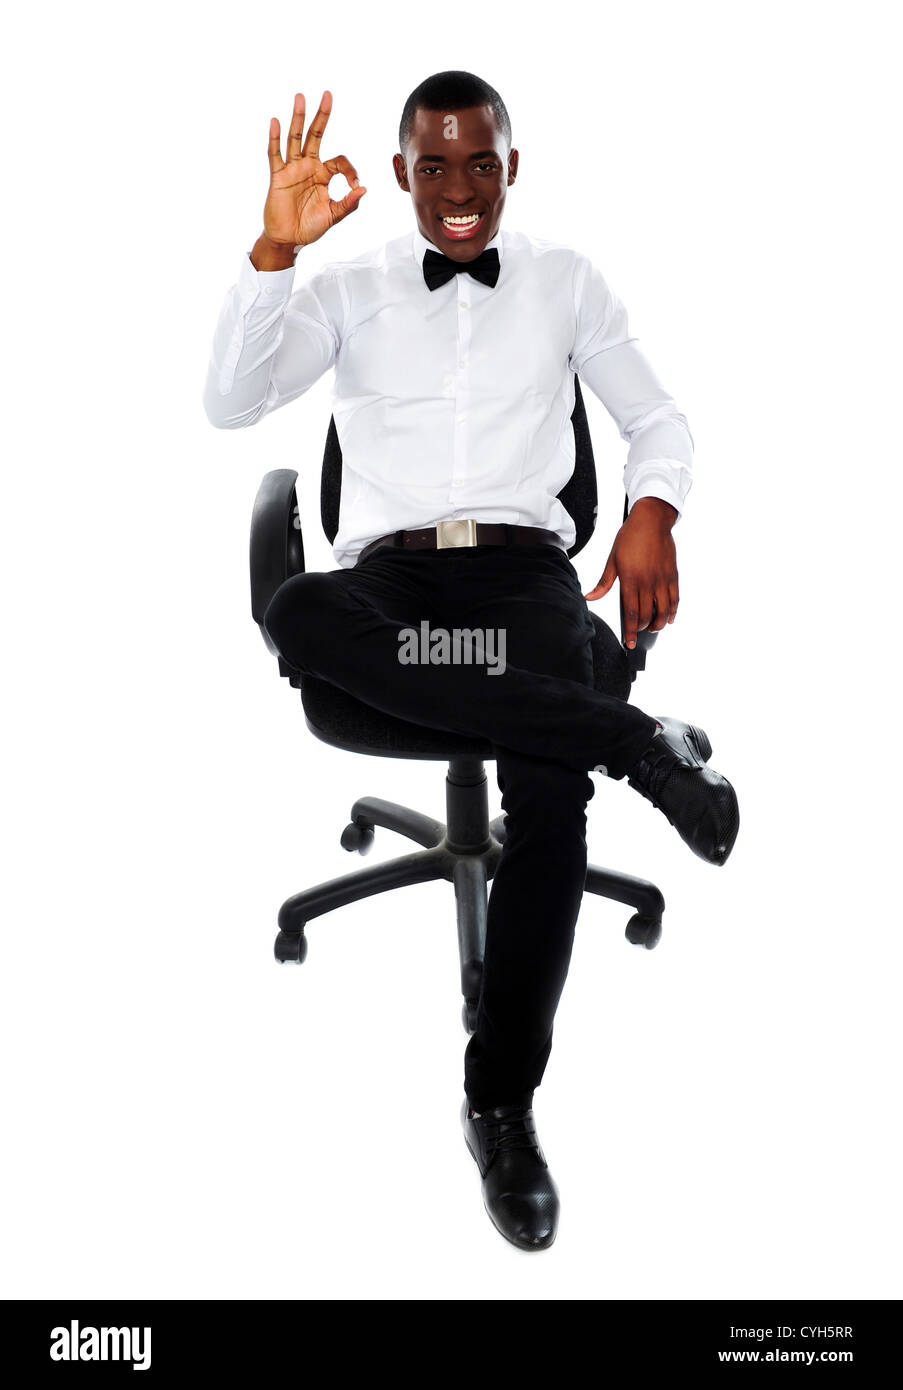 L'entreprise de l'Afrique de l'homme assis sur une chaise et montrant bien geste pour appareil photo Banque D'Images